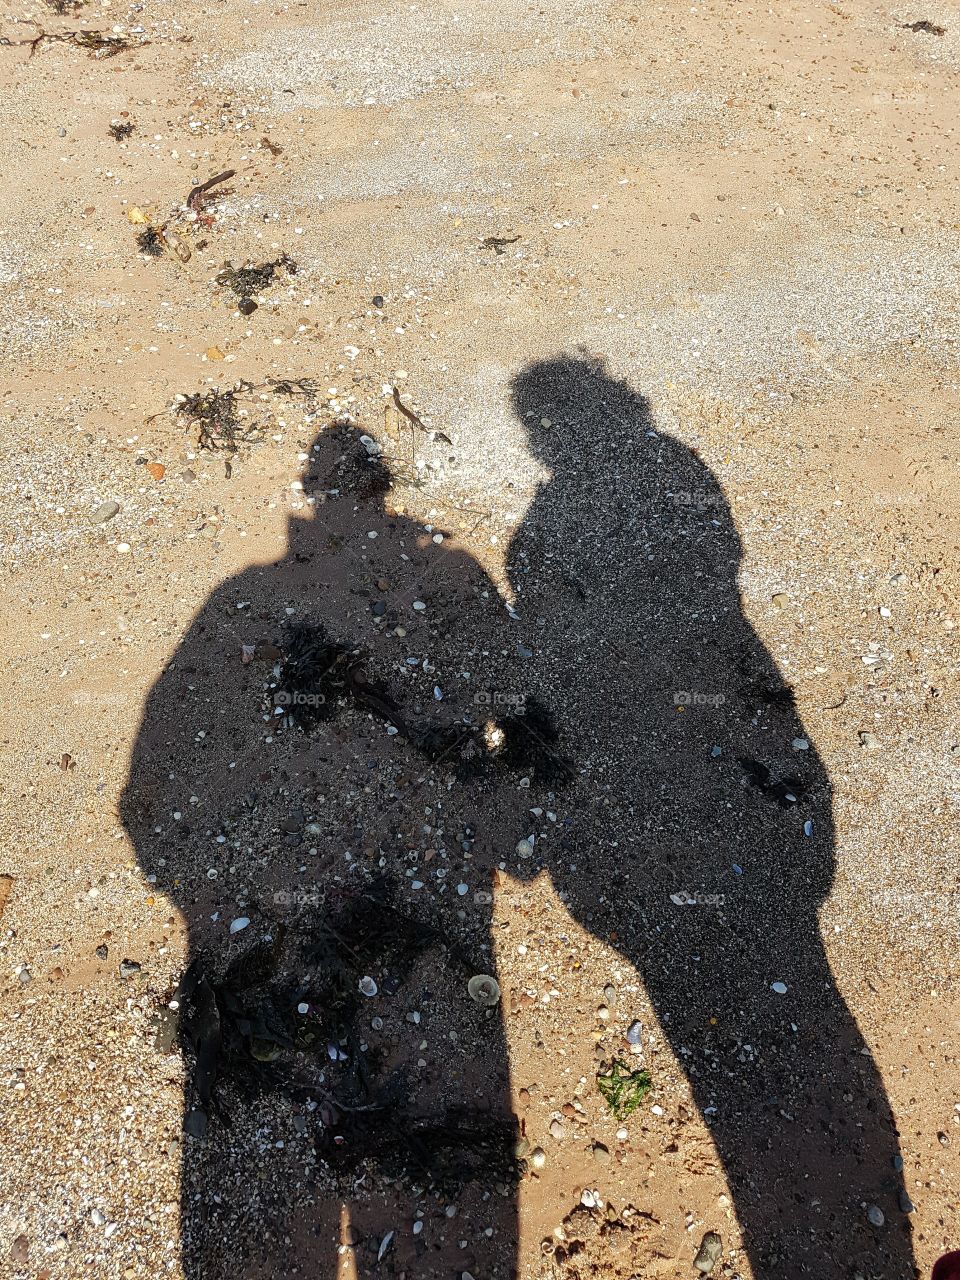 Shadows on the beach.